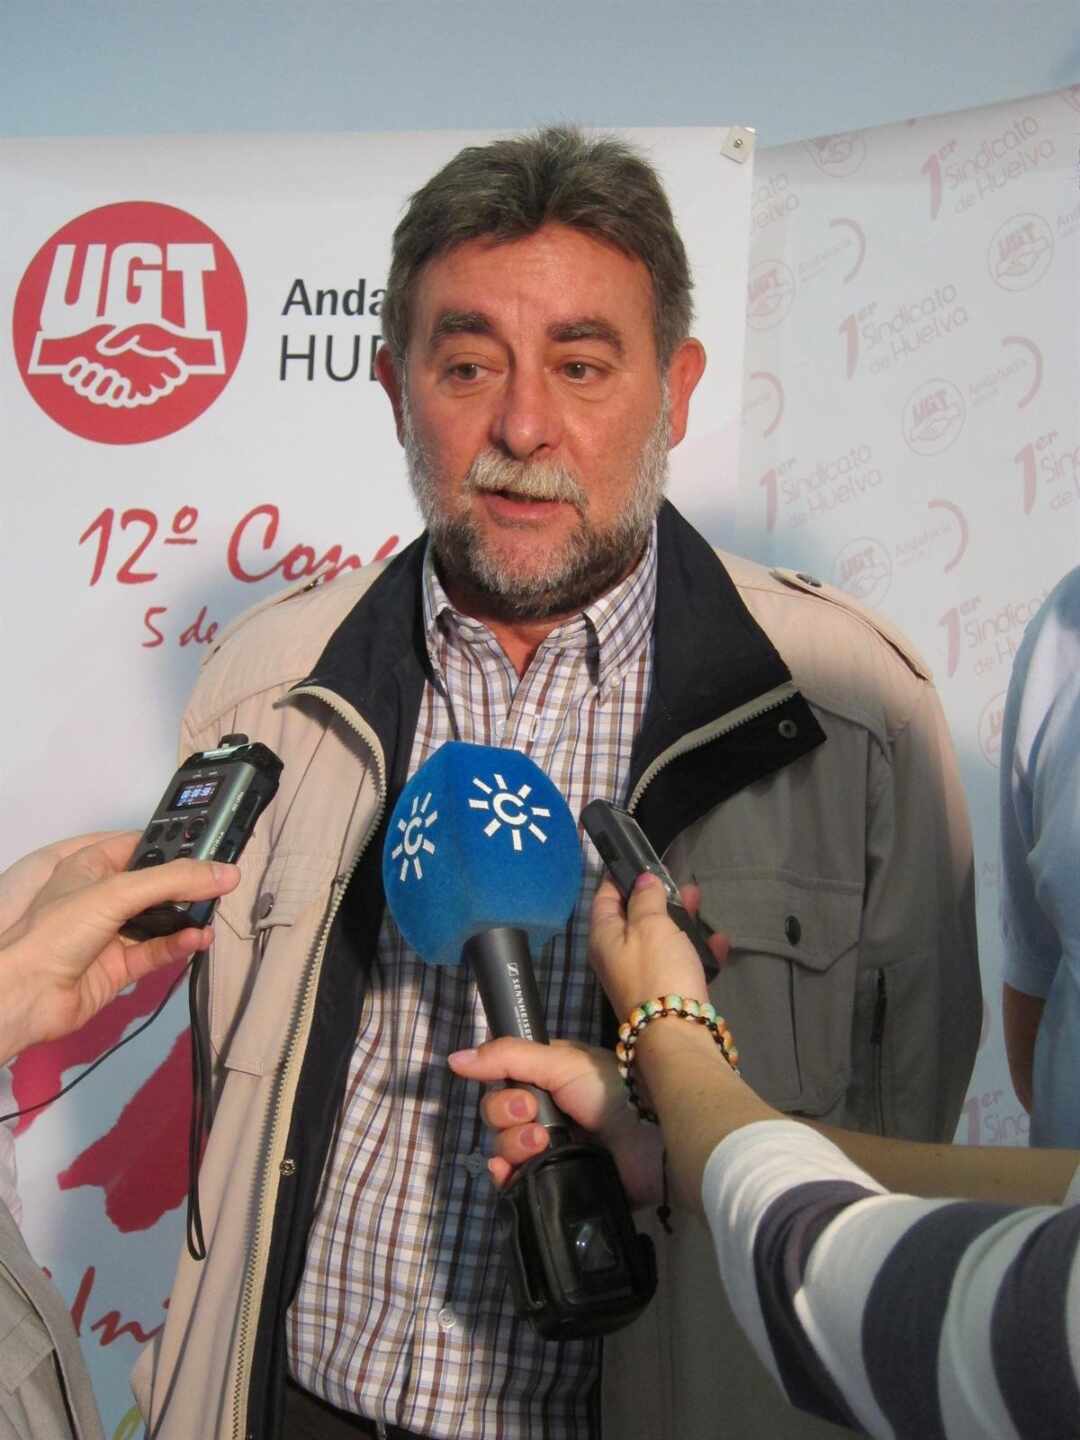 A juicio la cúpula de UGT Andalucía por el fraude millonario de las facturas falsas